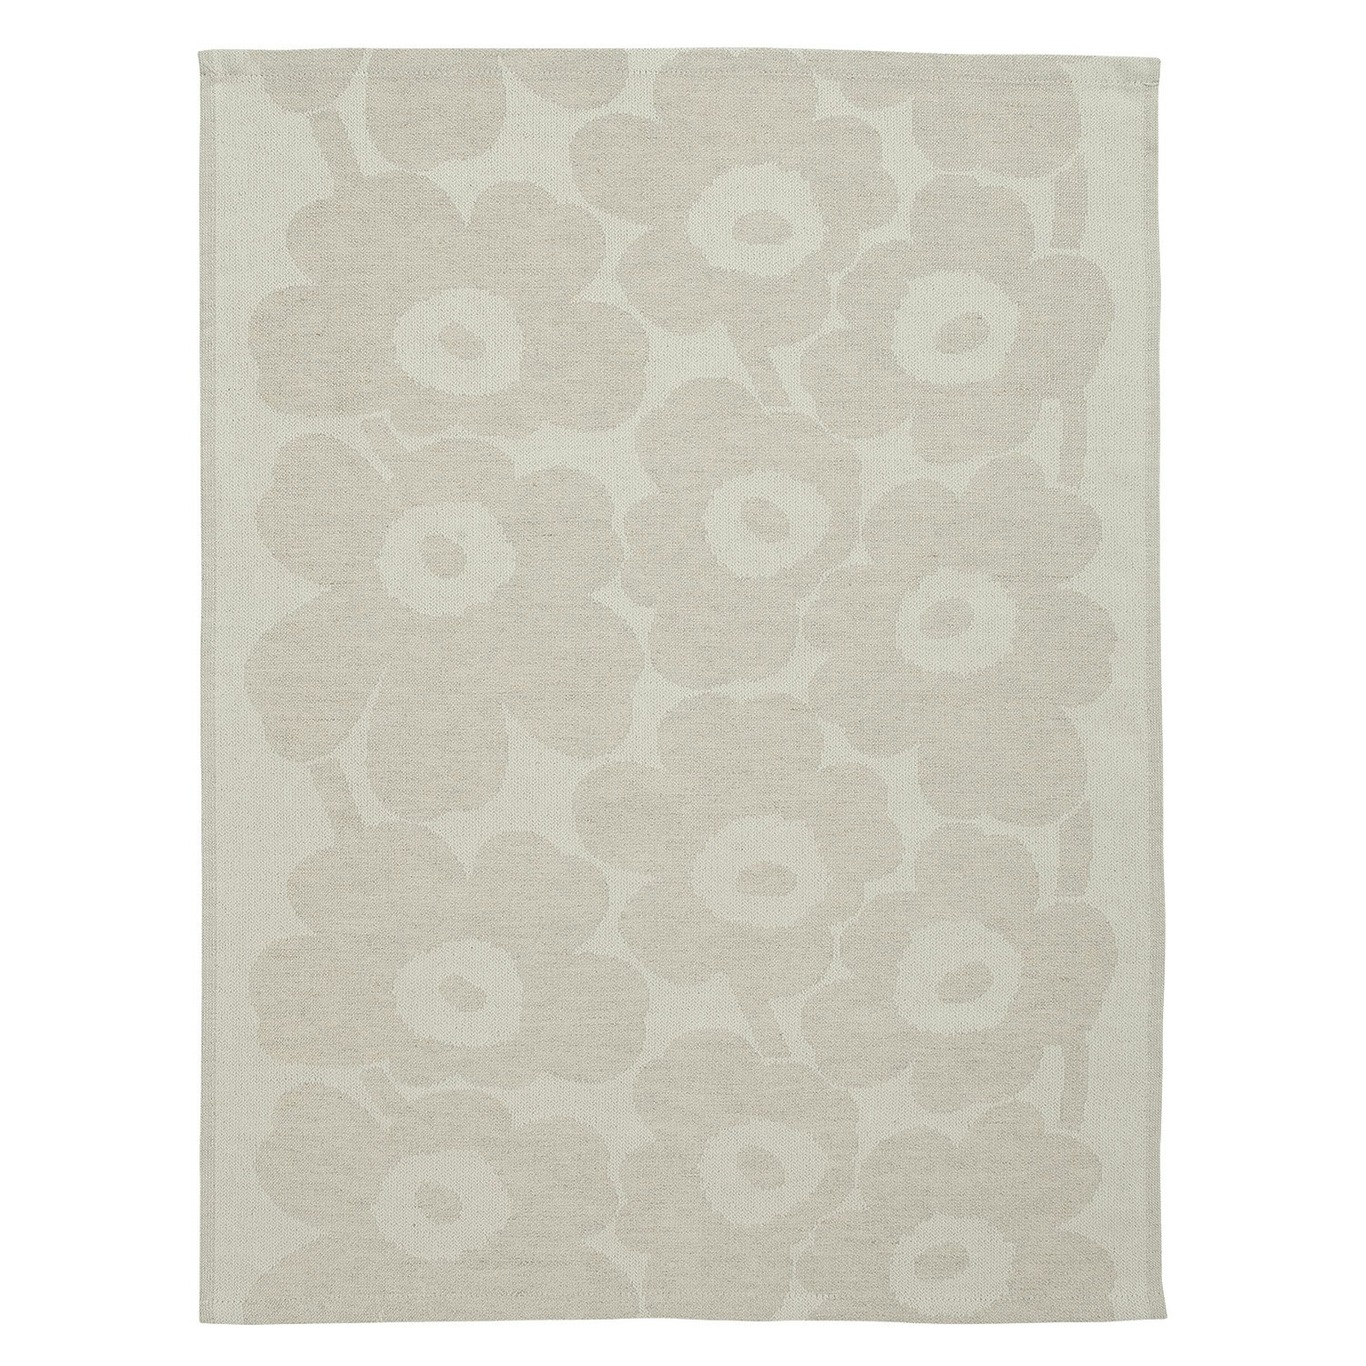 Pieni Unikko Kitchen Towel 50x70 cm, Off-white / Beige